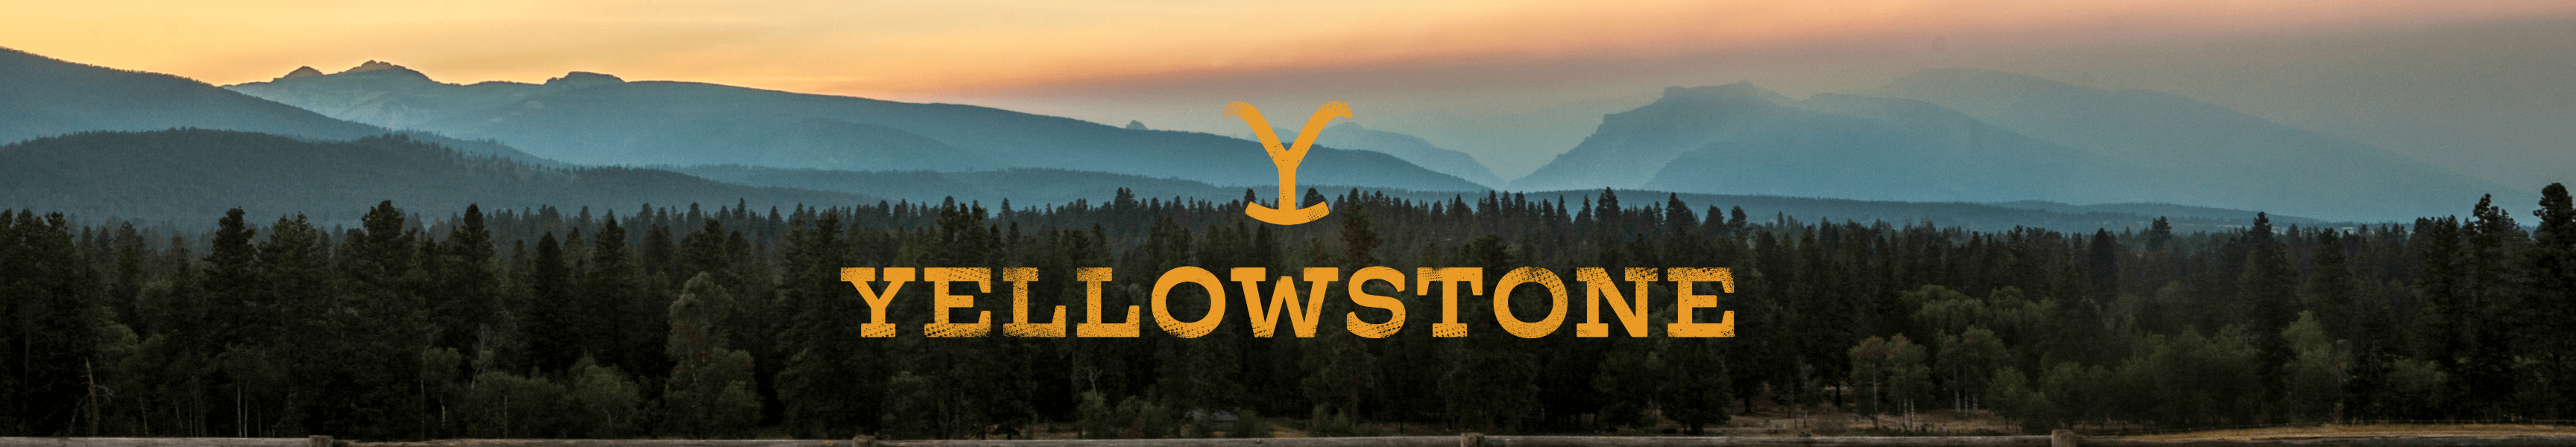 Yellowstone Colección de verano